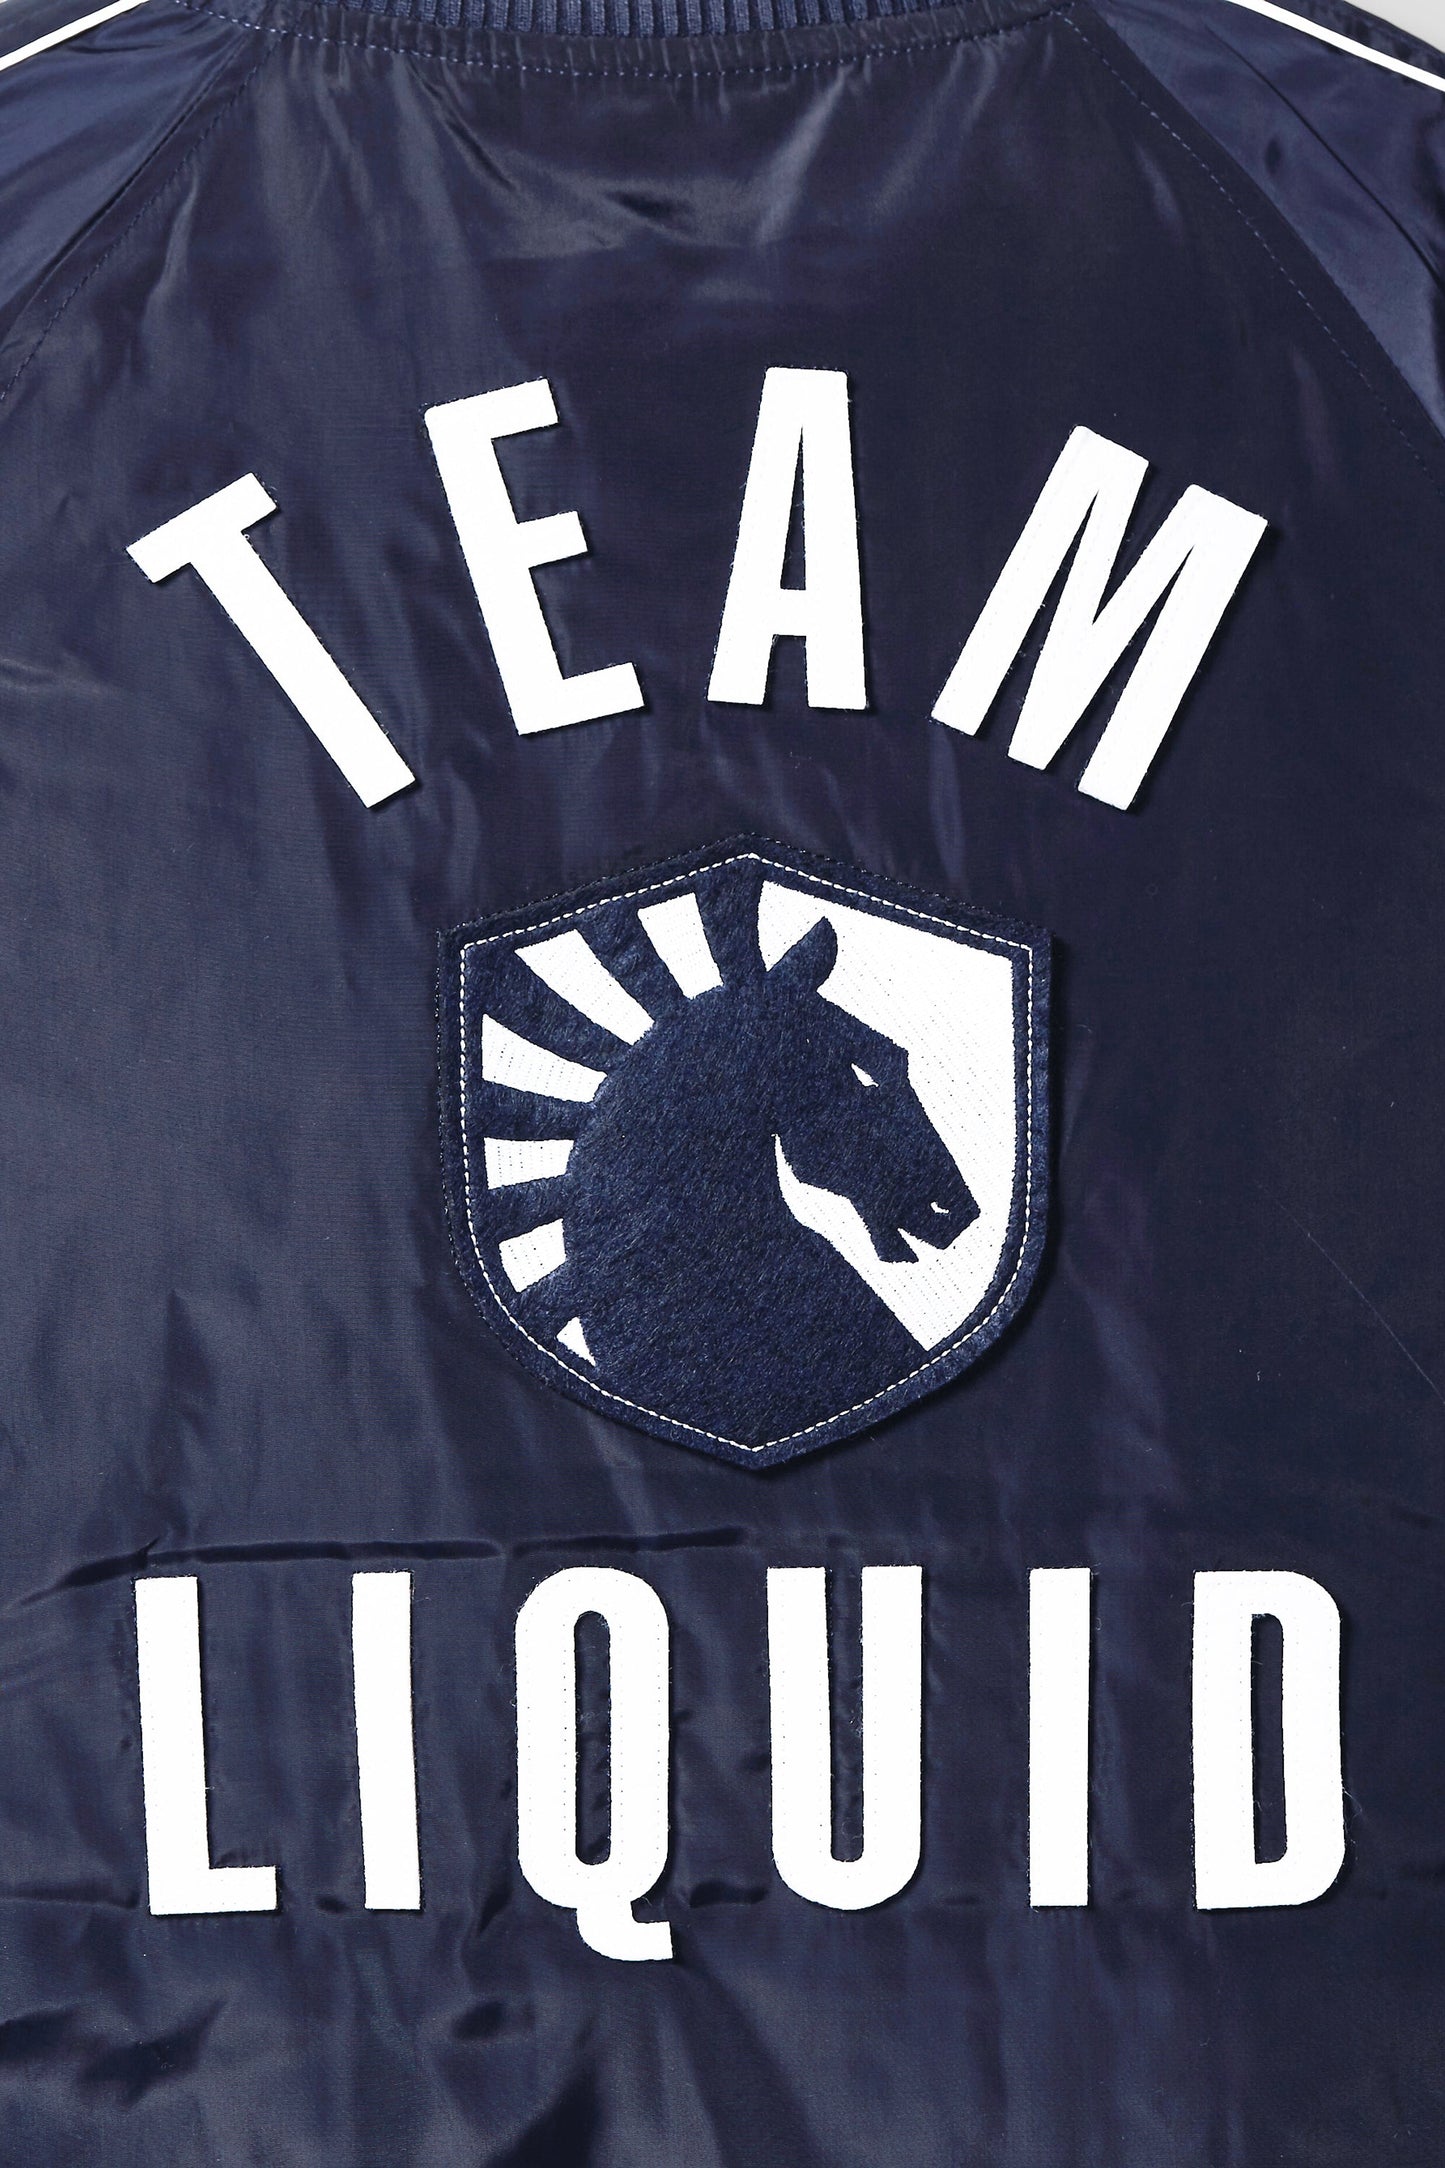 TEAM LIQUID STADIUM JACKET - Team Liquid